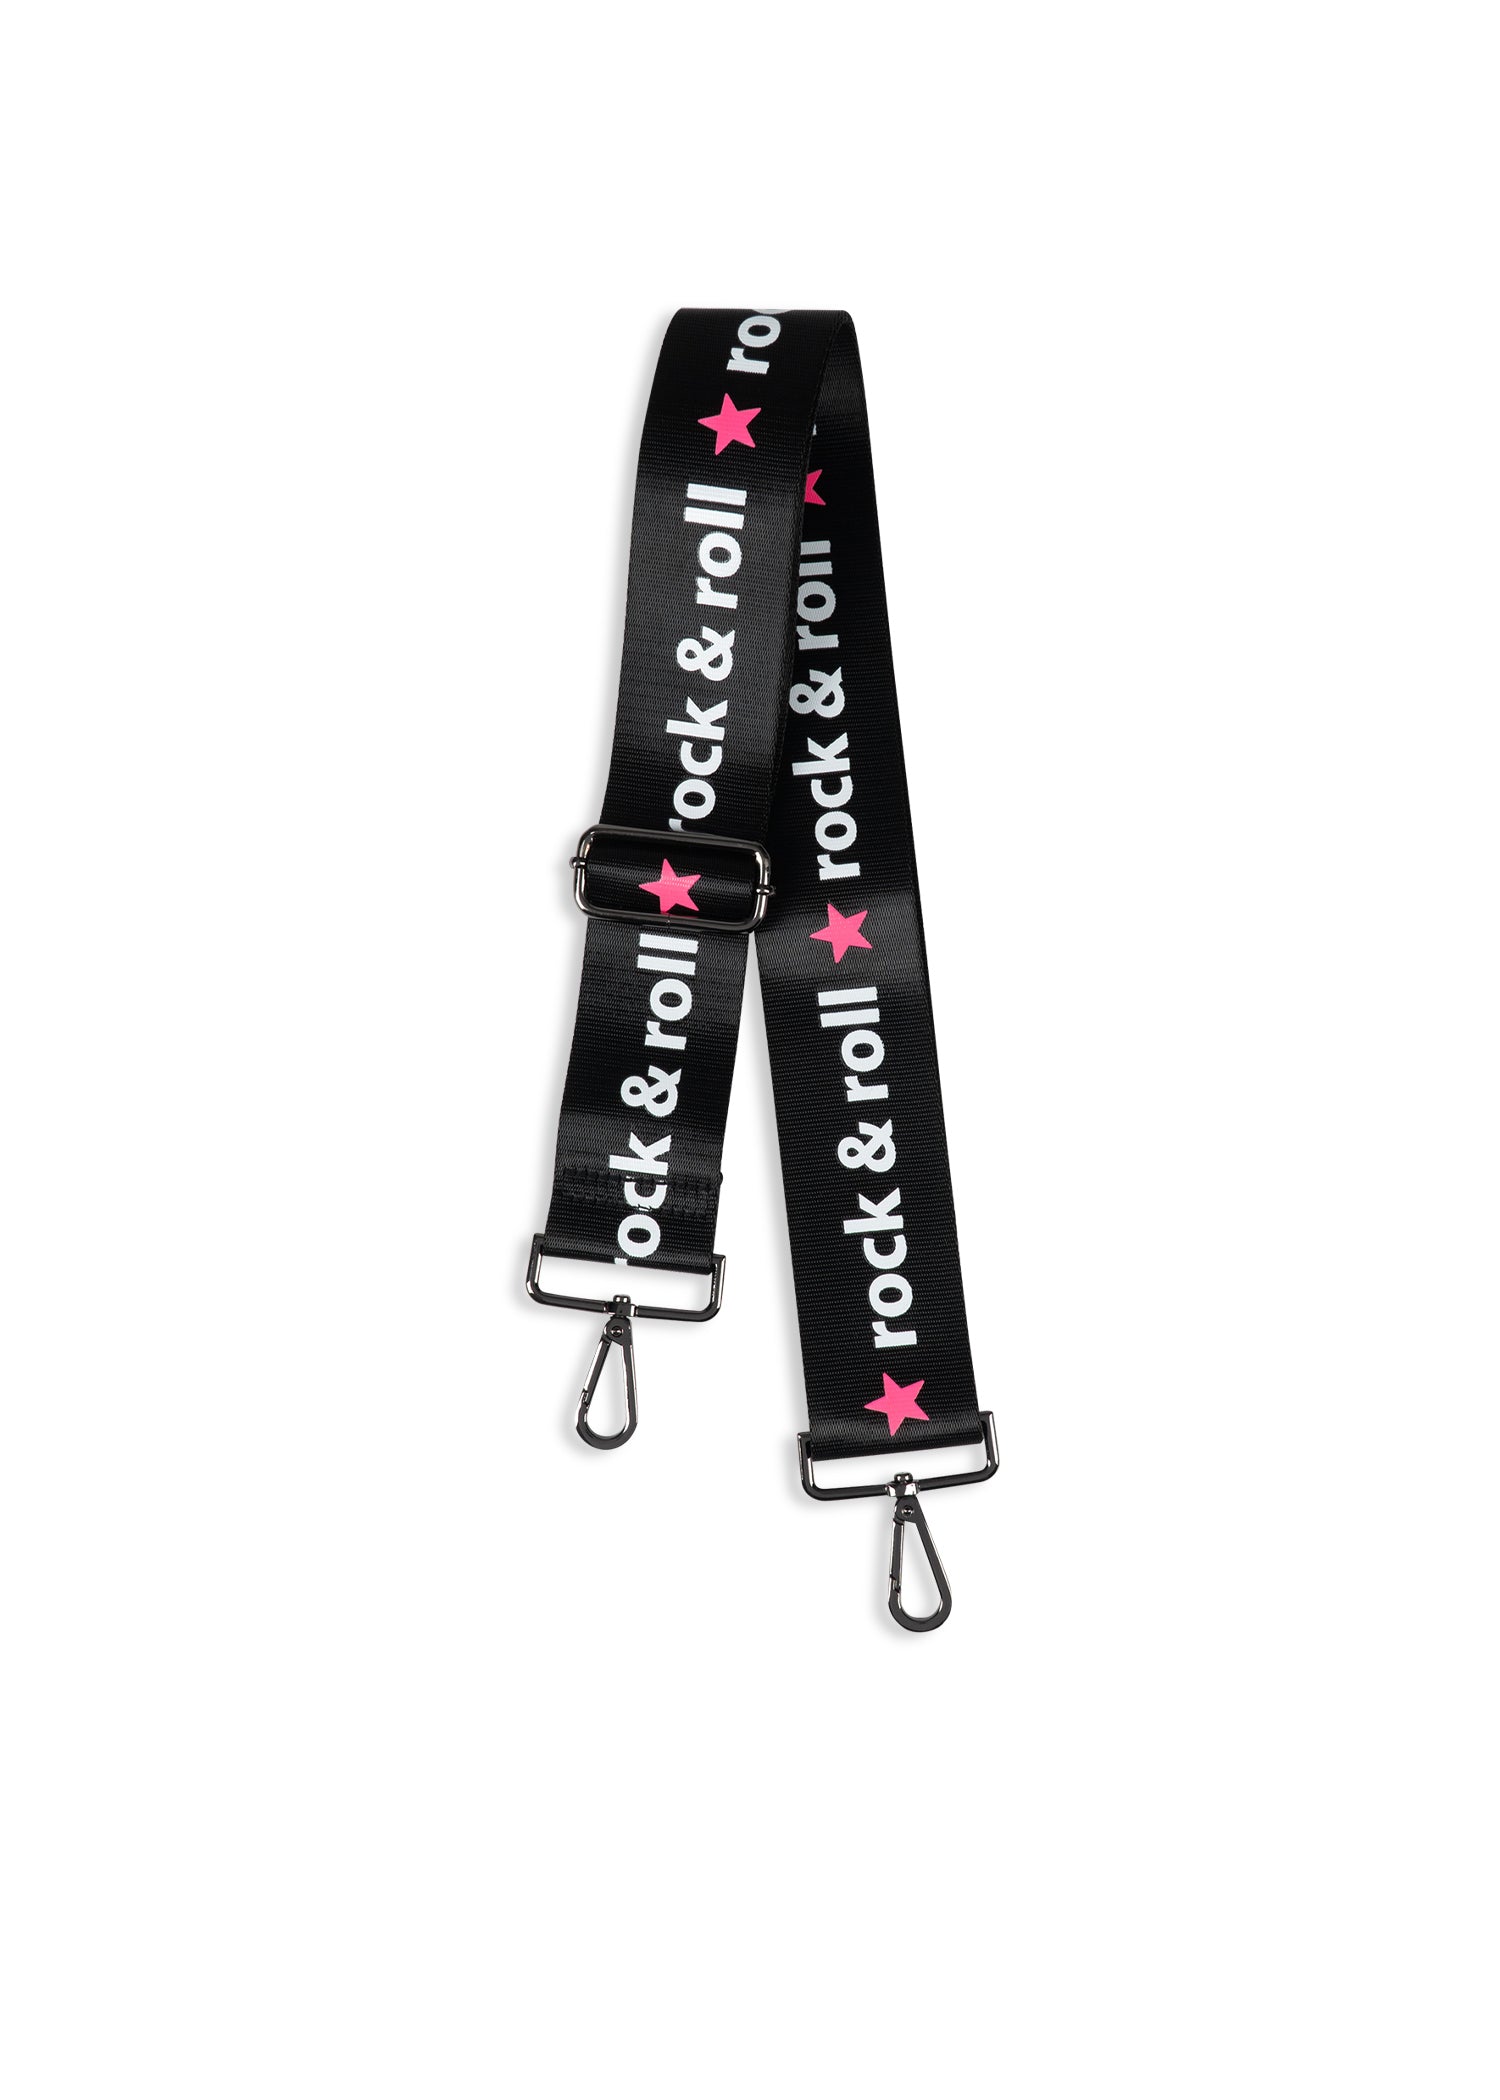 rock & roll hot pink star handbag strap